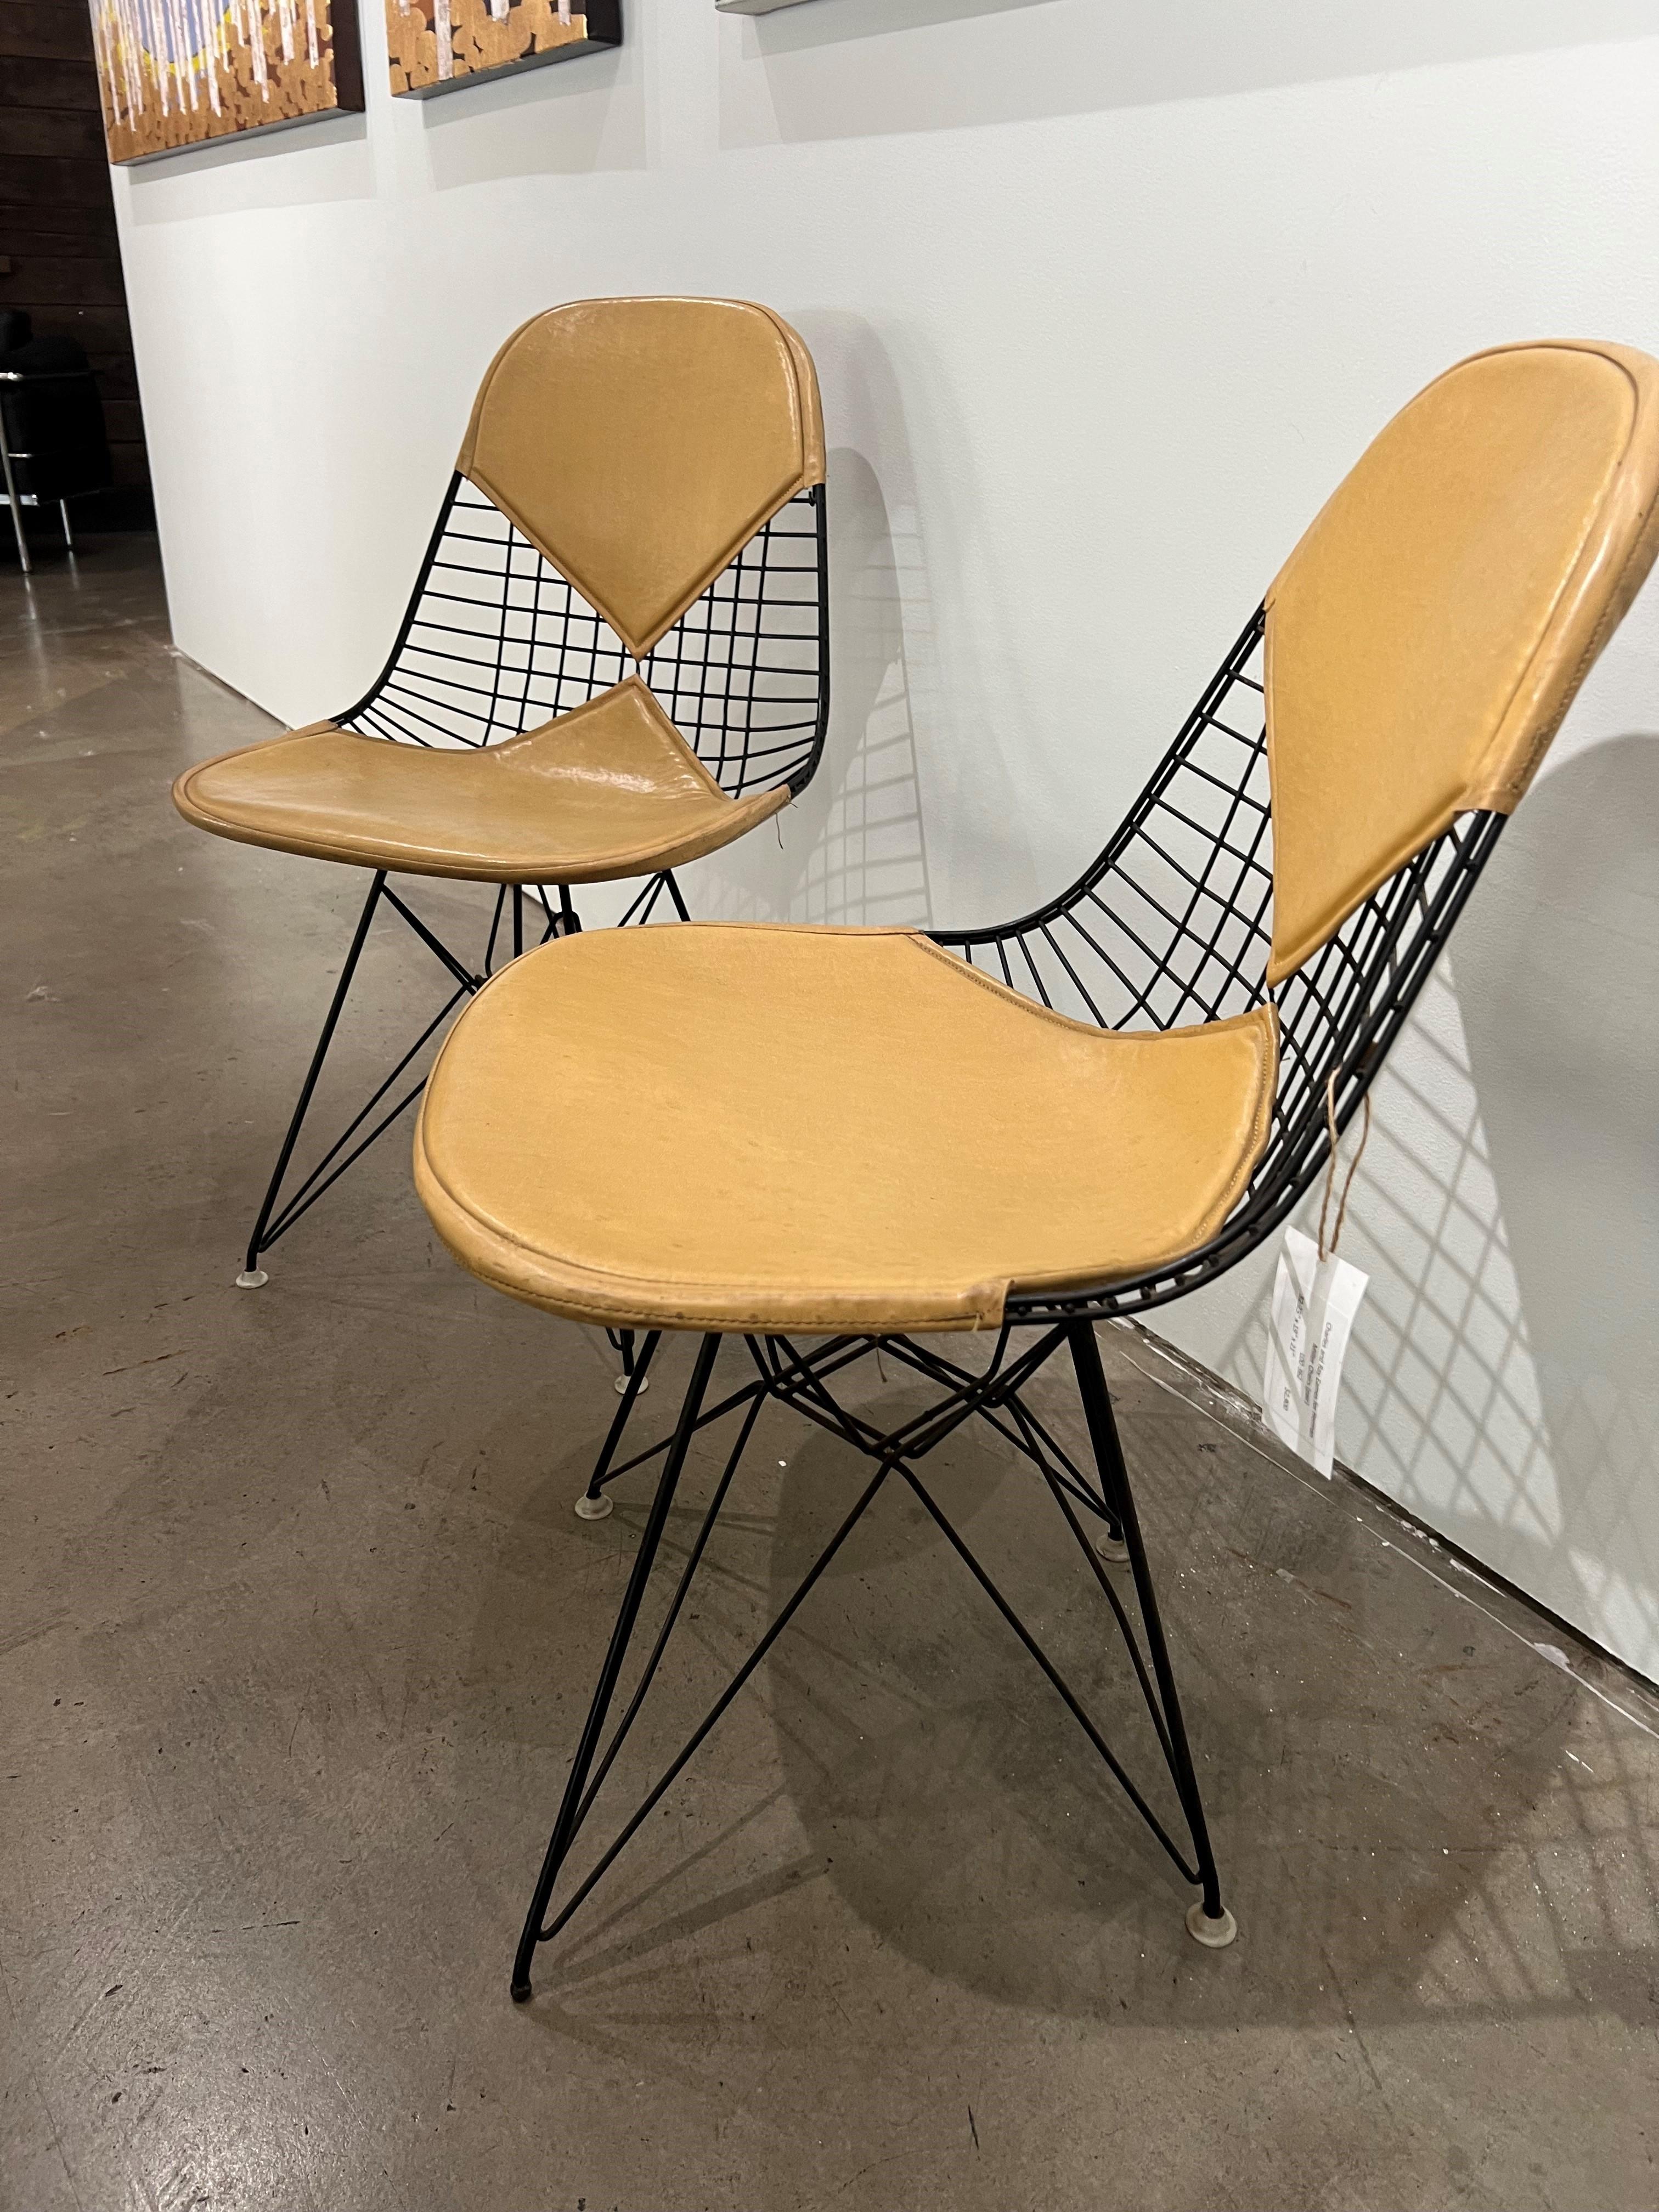 Treten Sie ein in die Welt des zeitlosen Designs mit den ikonischen Kreationen von Charles und Ray Eames für Herman Miller Stühle. Berühmt für ihren innovativen Ansatz, revolutionierten die Eames das Konzept der Sitzmöbel, indem sie Funktionalität,